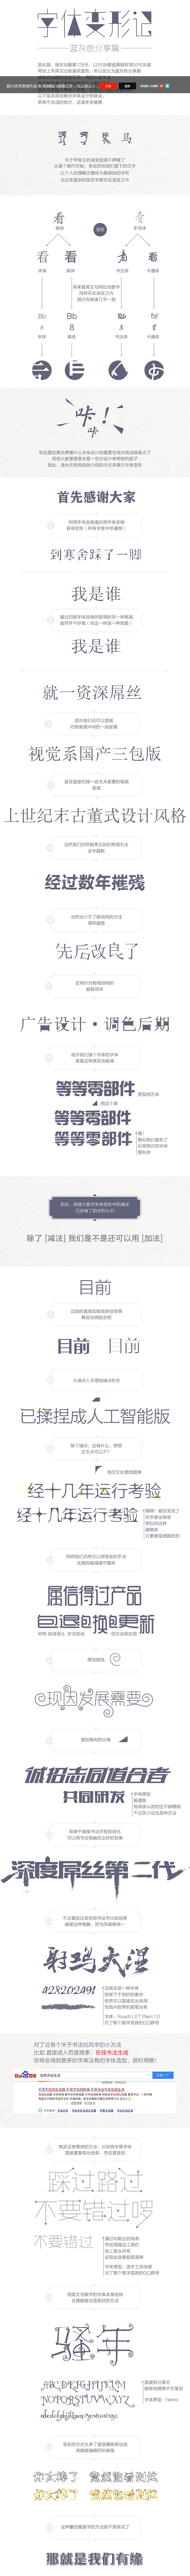 文字设计 汉字设计 文字造型设计 字体变...